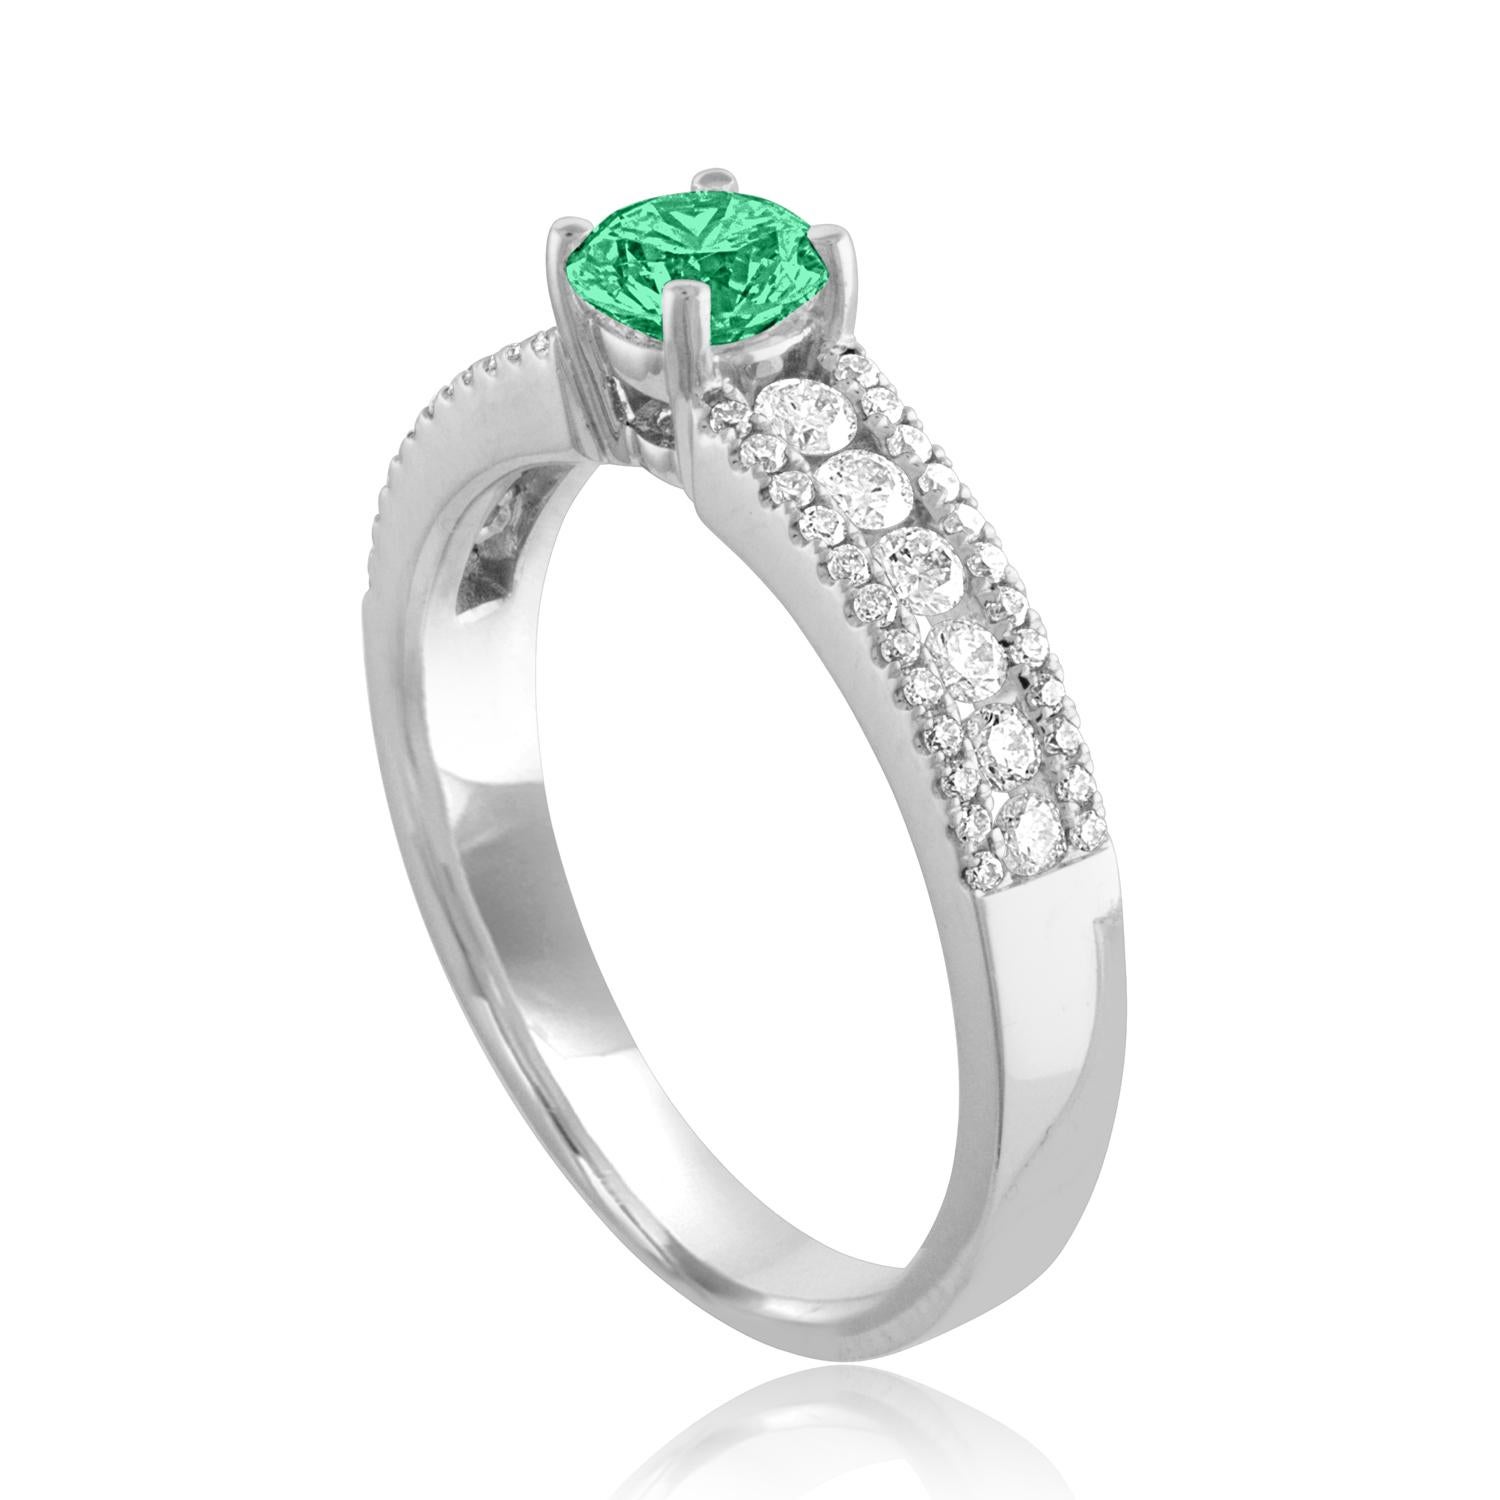 Schöner Diamant & Smaragd Ring
Der Ring ist aus 18 Karat Weißgold.
Es sind 0.51 Karat in Diamanten F/G VS/SI
Das Zentrum ist rund 0,44 Karat Smaragd.
Der Smaragd ist AGL-zertifiziert.
Der Ring ist eine Größe 6.50, sizable.
Der Ring wiegt 3.8 Gramm.